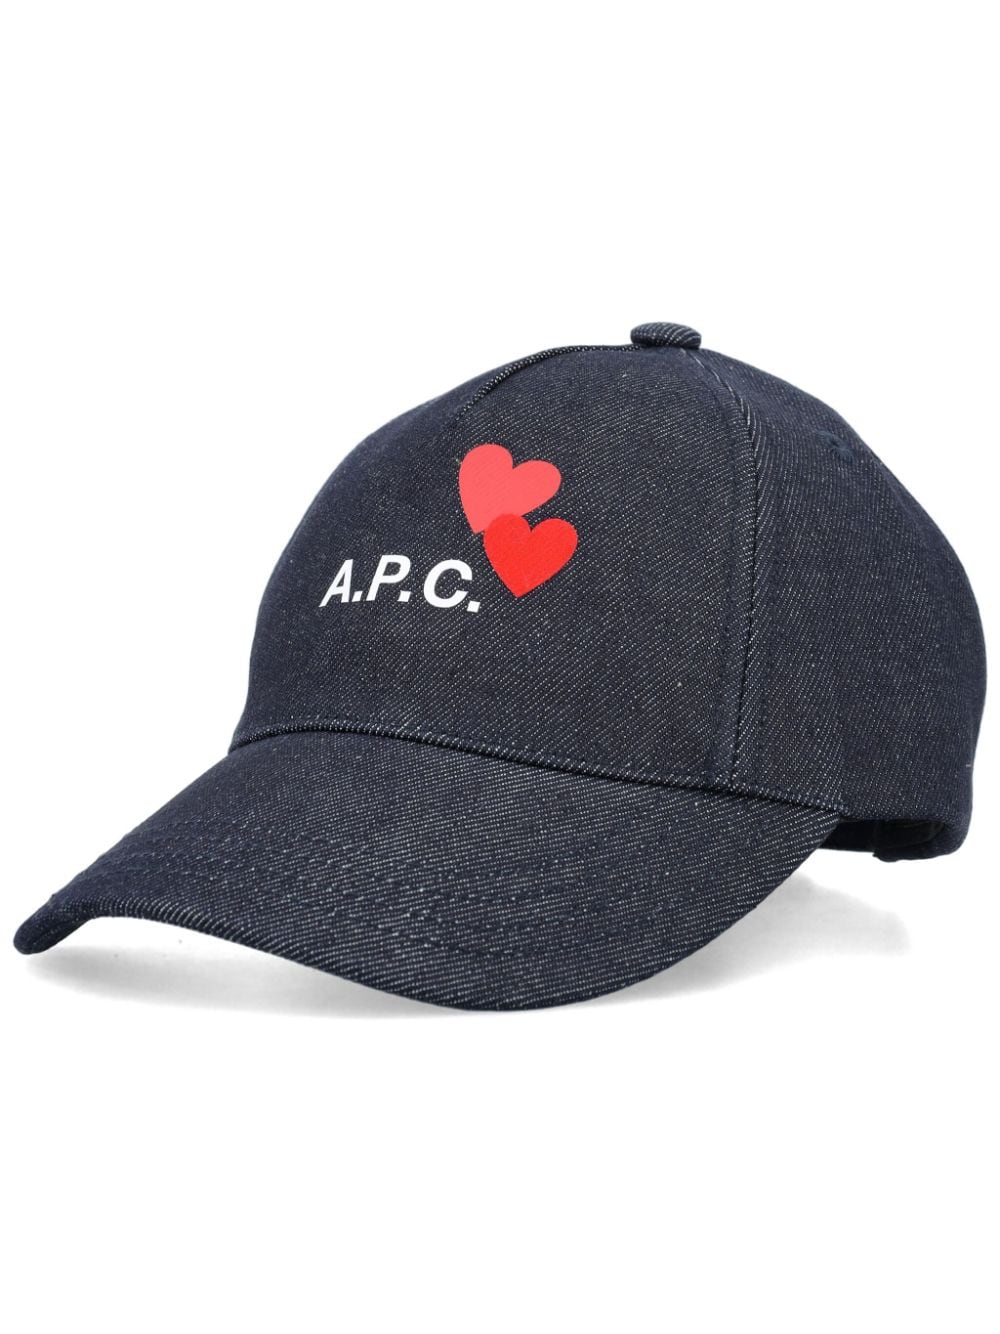 A.P.C. Eden Blondie denim baseball cap - Blue von A.P.C.